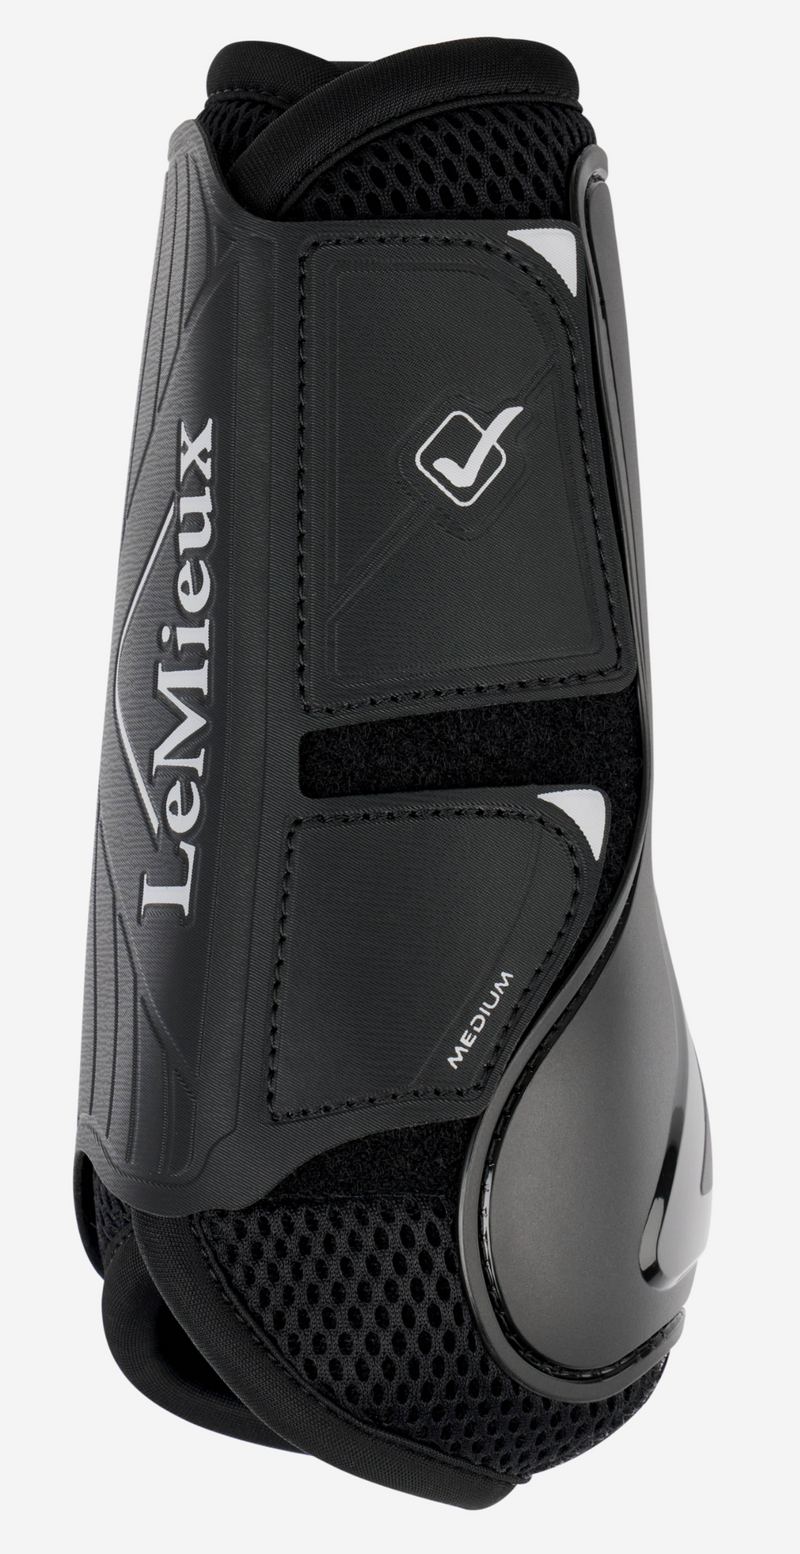 Lemieux Motionflex Dressage Boot Black